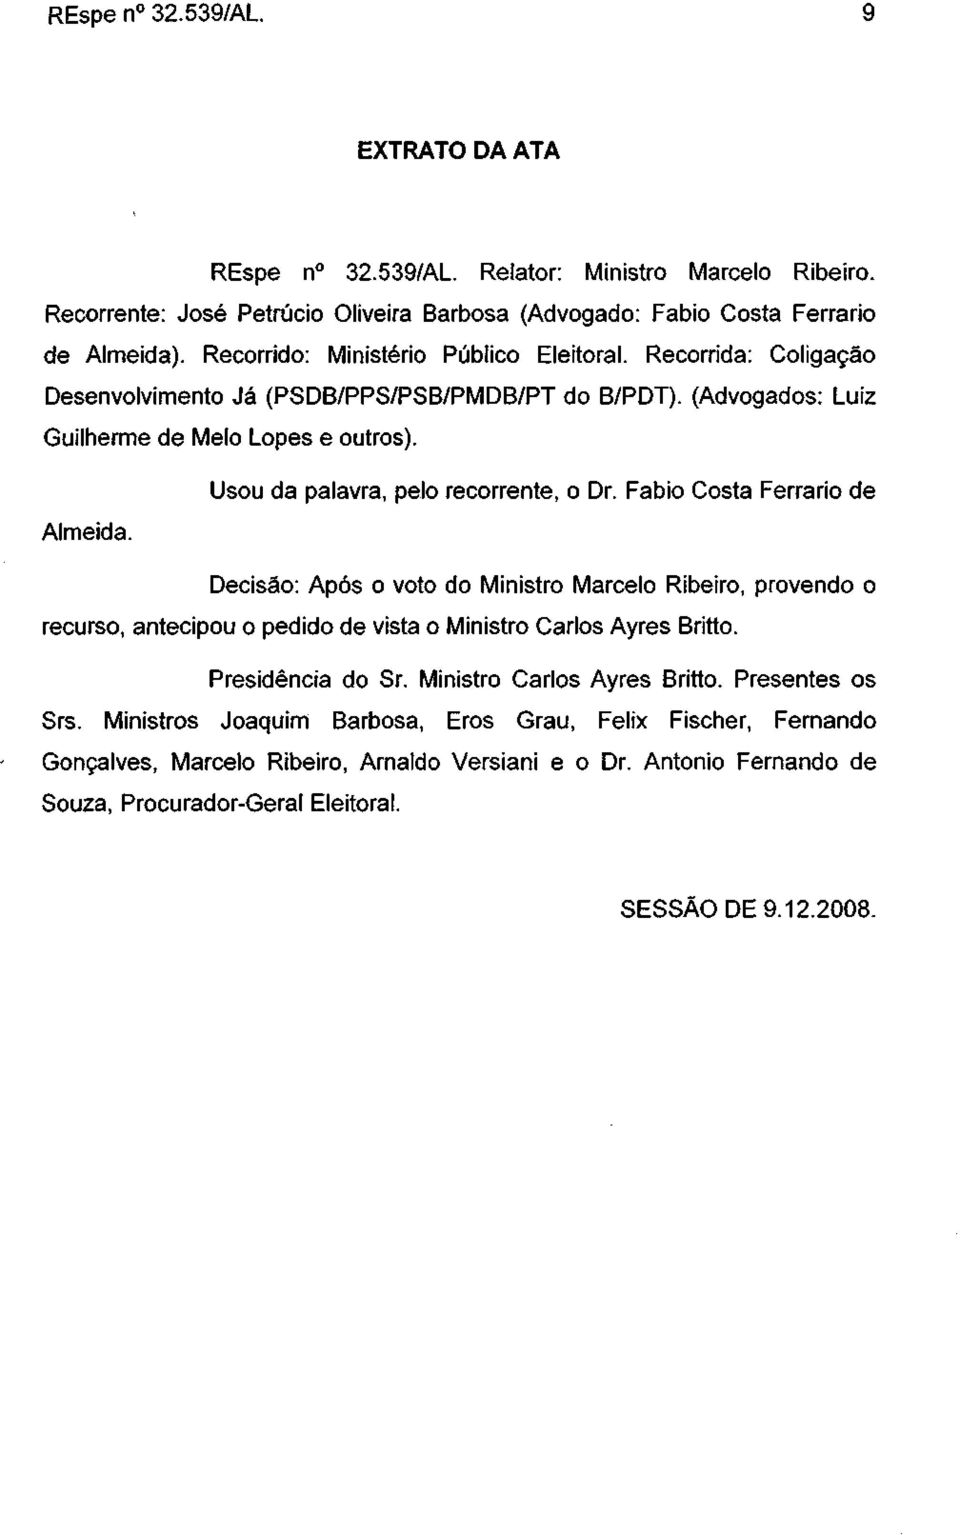 Usou da palavra, pelo recorrente, o Dr. Fábio Costa Ferrario de Decisão: Após o voto do Ministro Marcelo Ribeiro, provendo o recurso, antecipou o pedido de vista o Ministro Carlos Ayres Britto.